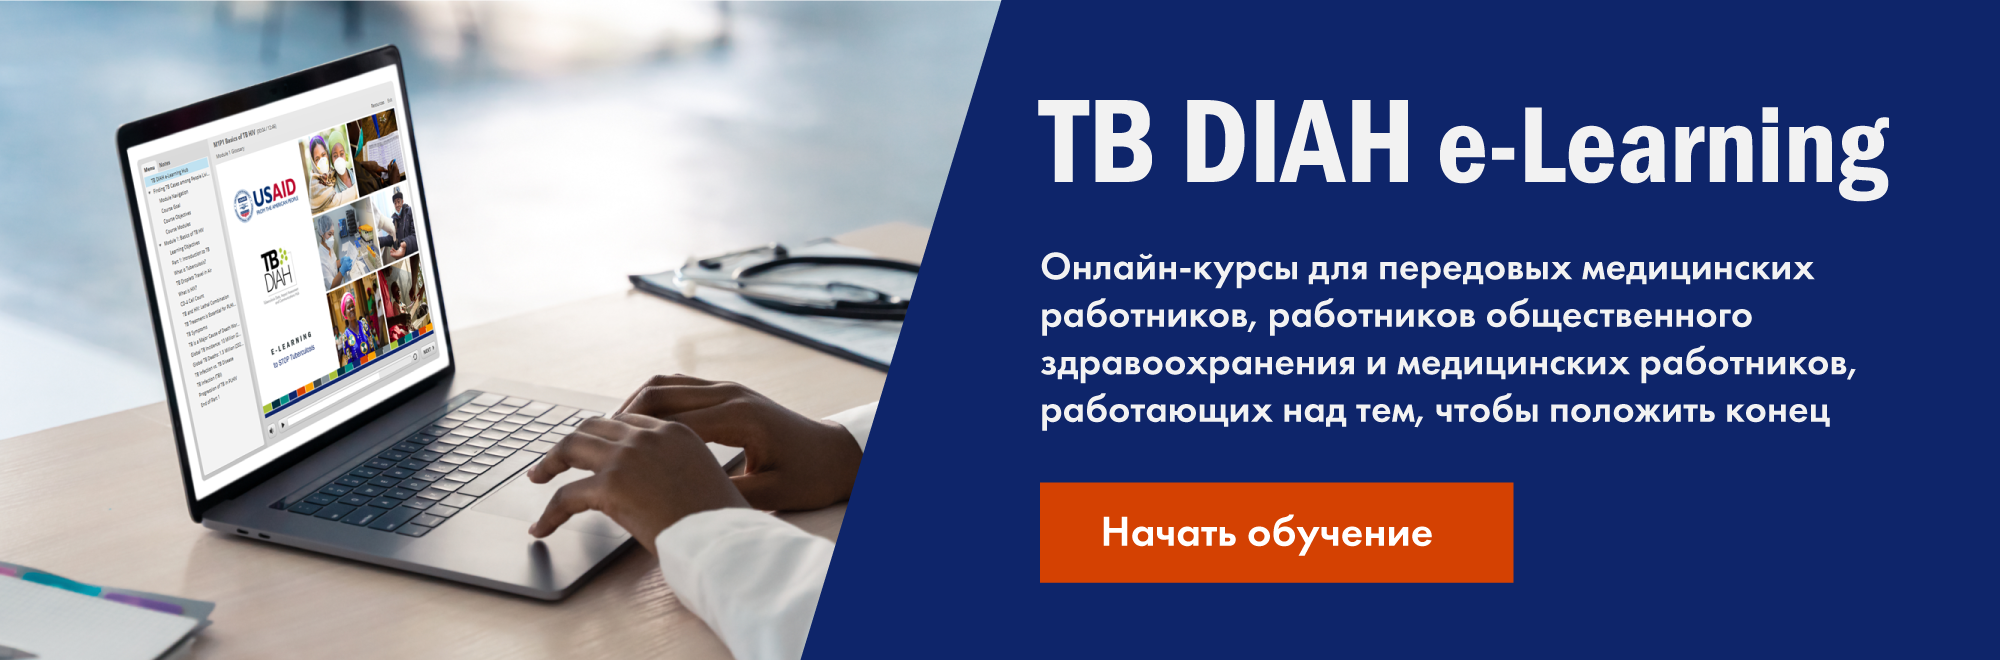 TB DIAH e-Learning Онлайн-курсы для передовых медицинских работников, работников общественного здравоохранения и медицинских 